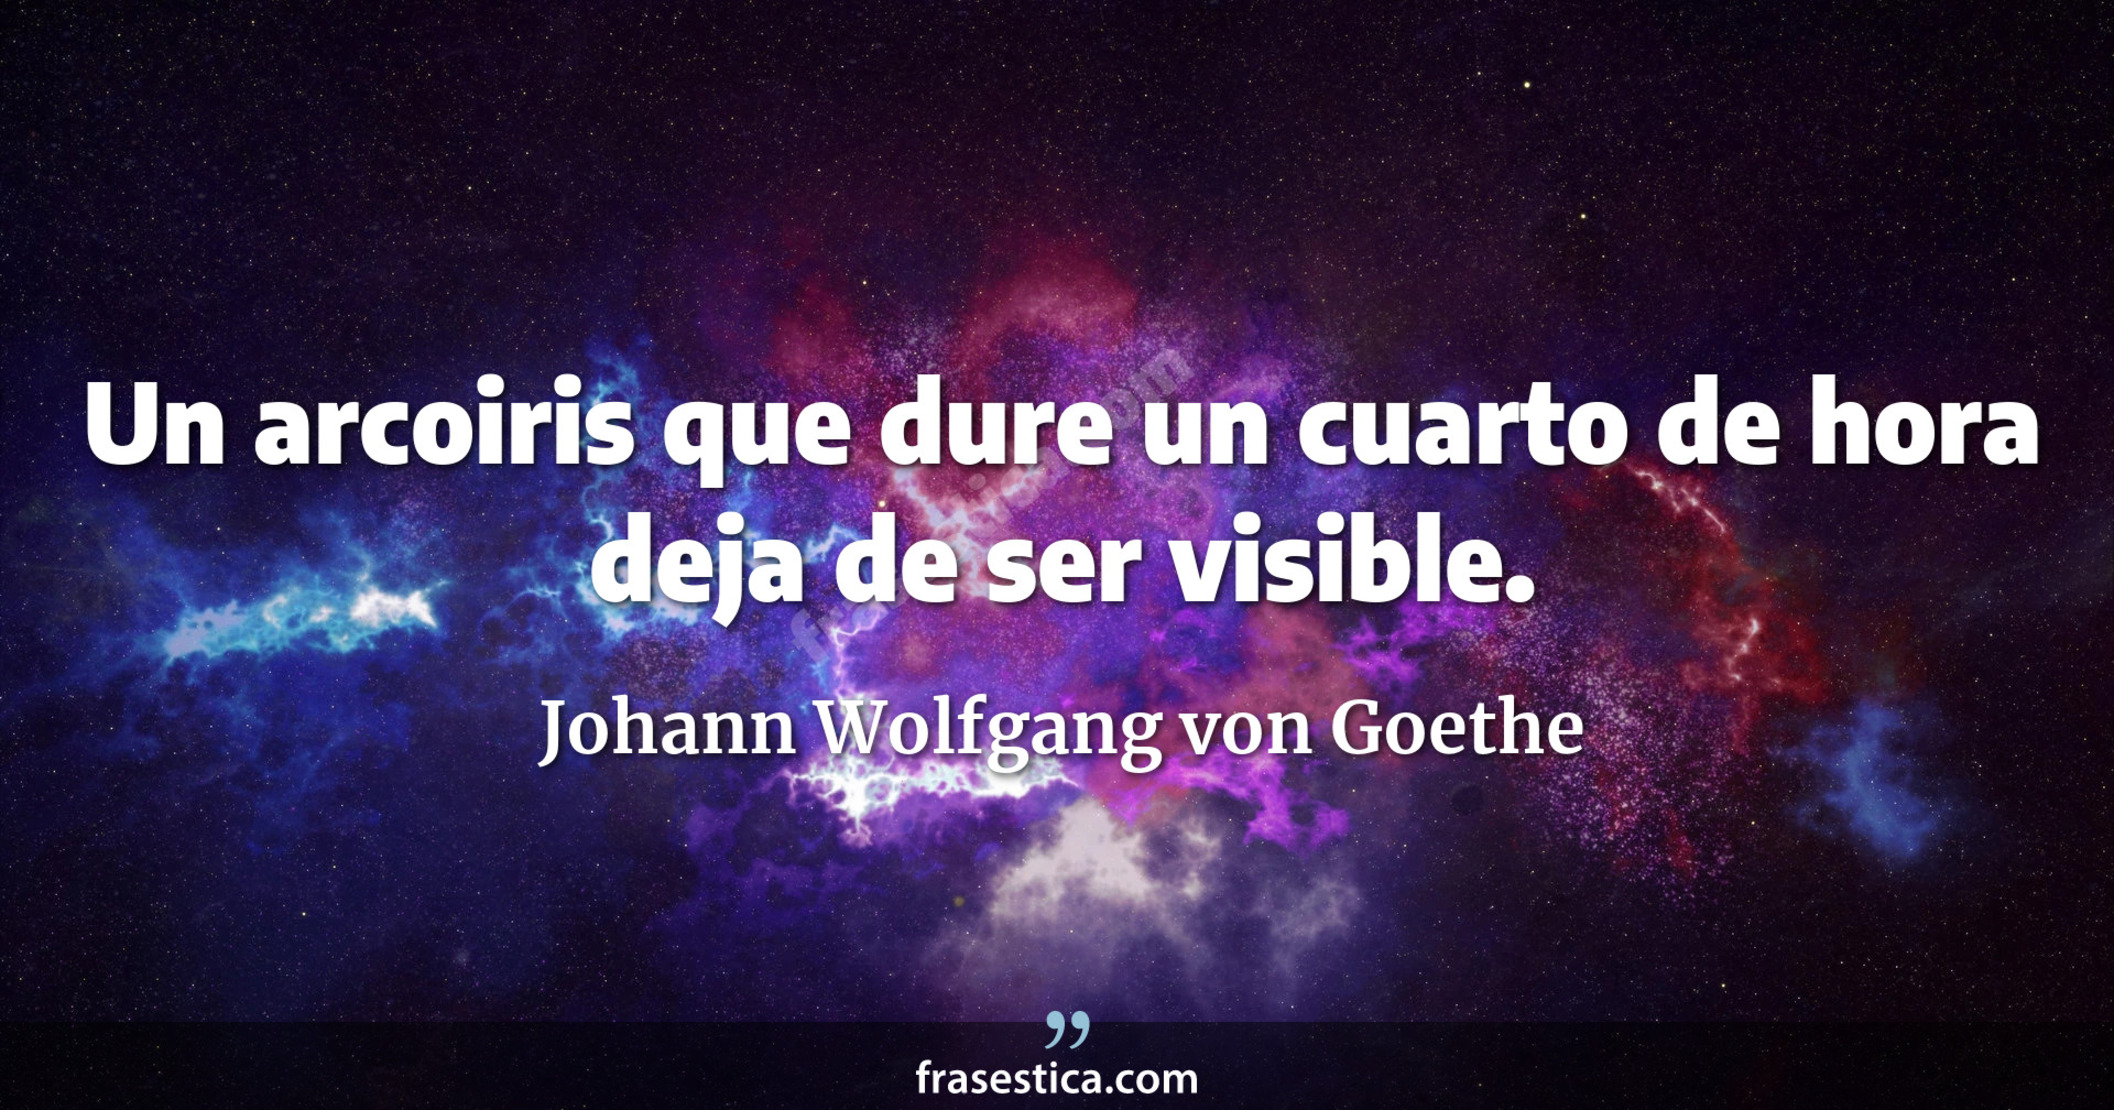 Un arcoiris que dure un cuarto de hora deja de ser visible. - Johann Wolfgang von Goethe